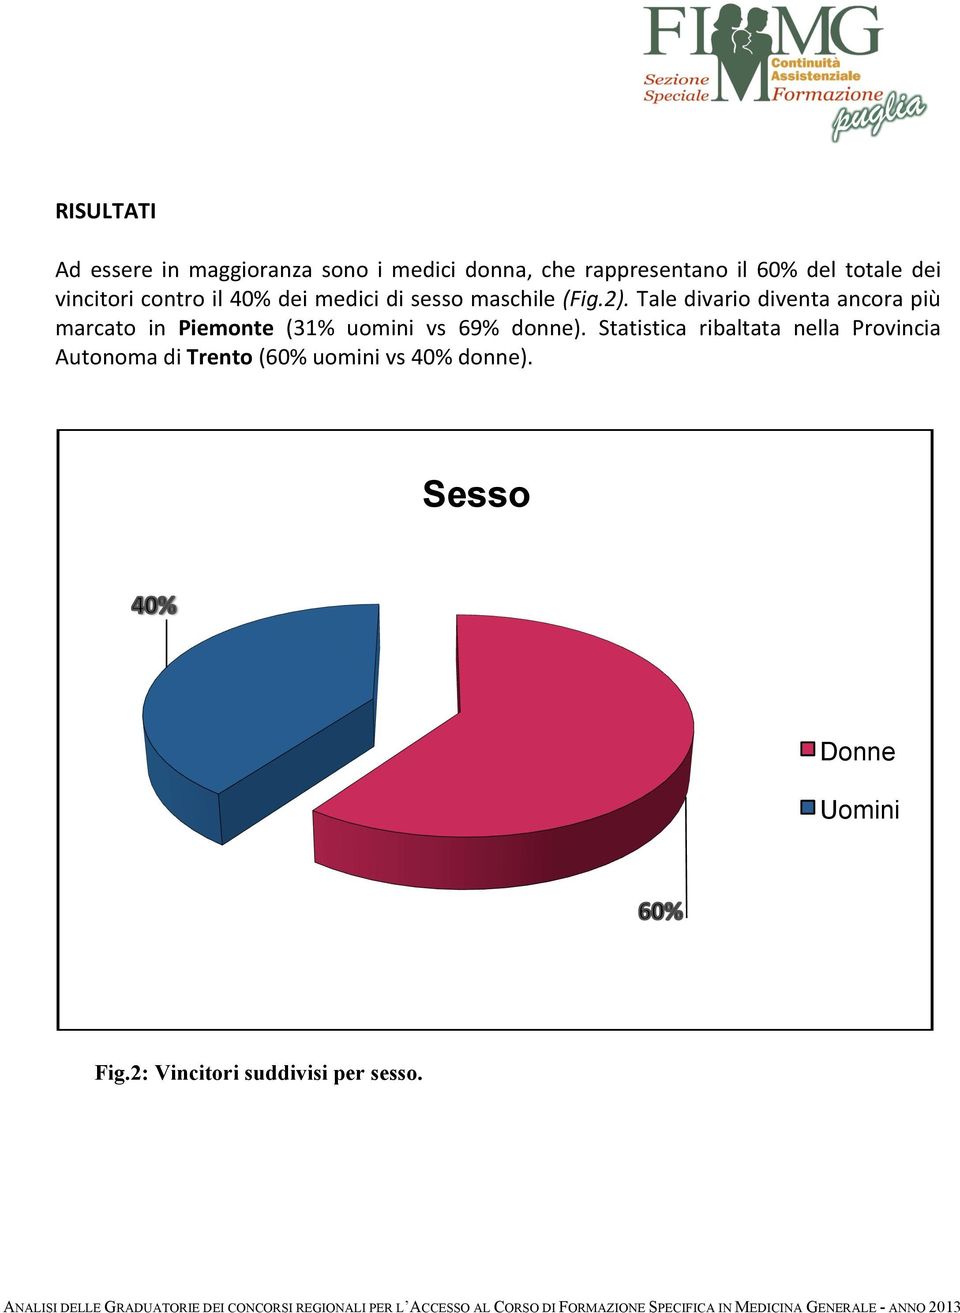 Tale divario diventa ancora più marcato in Piemonte (31% uomini vs 69% donne).